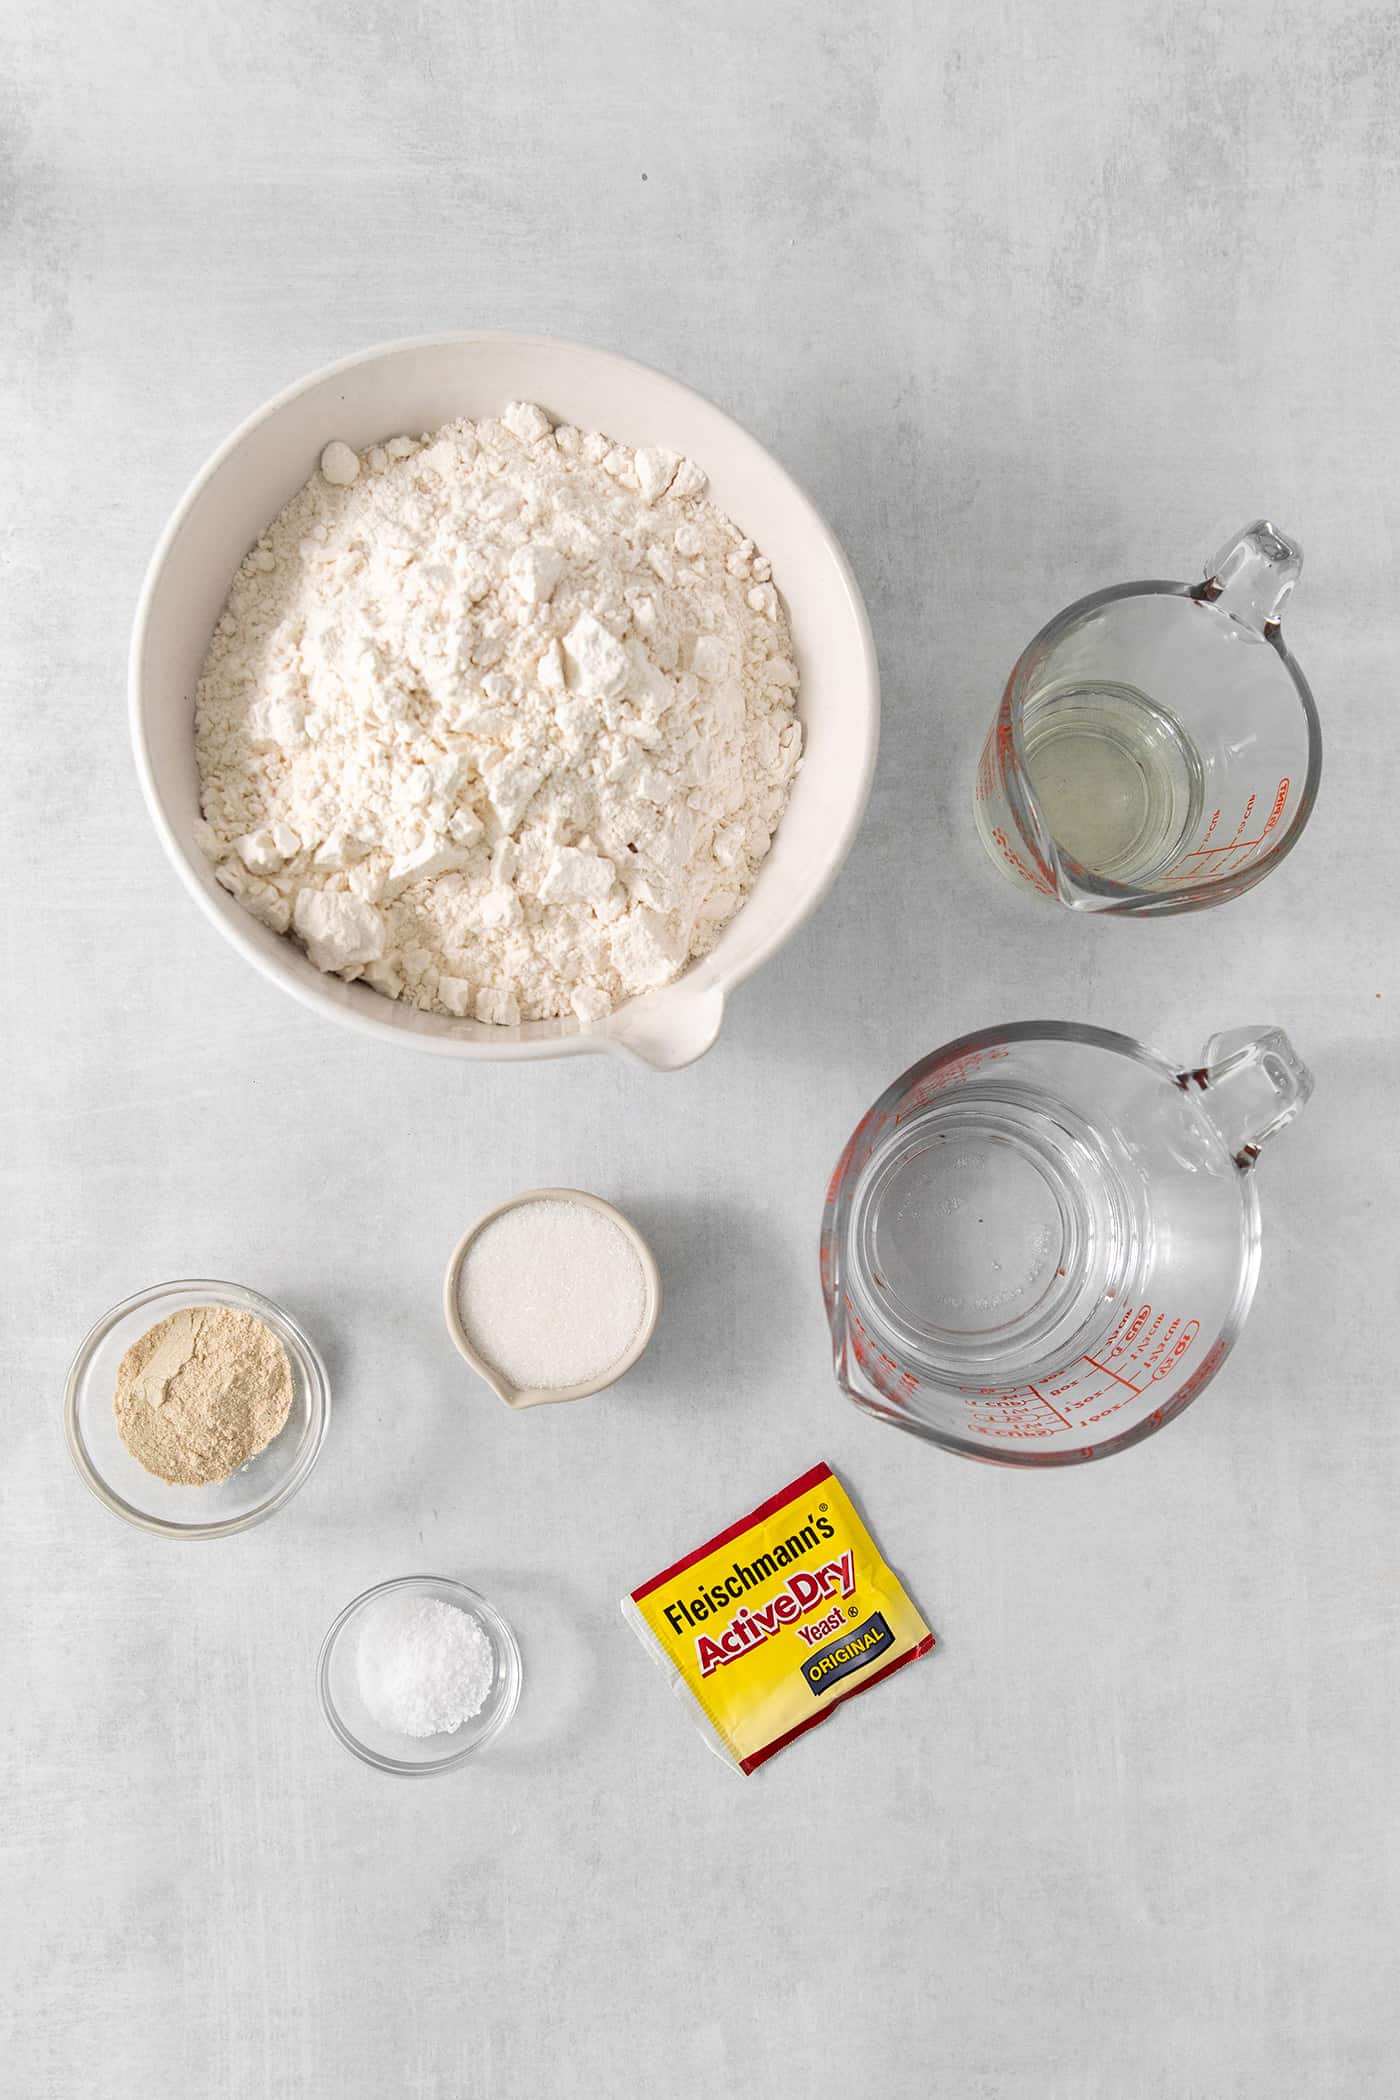 Ingredients needed to make rhodes rolls: flour, yeast, diastatic malt powder, salt, sugar, water.